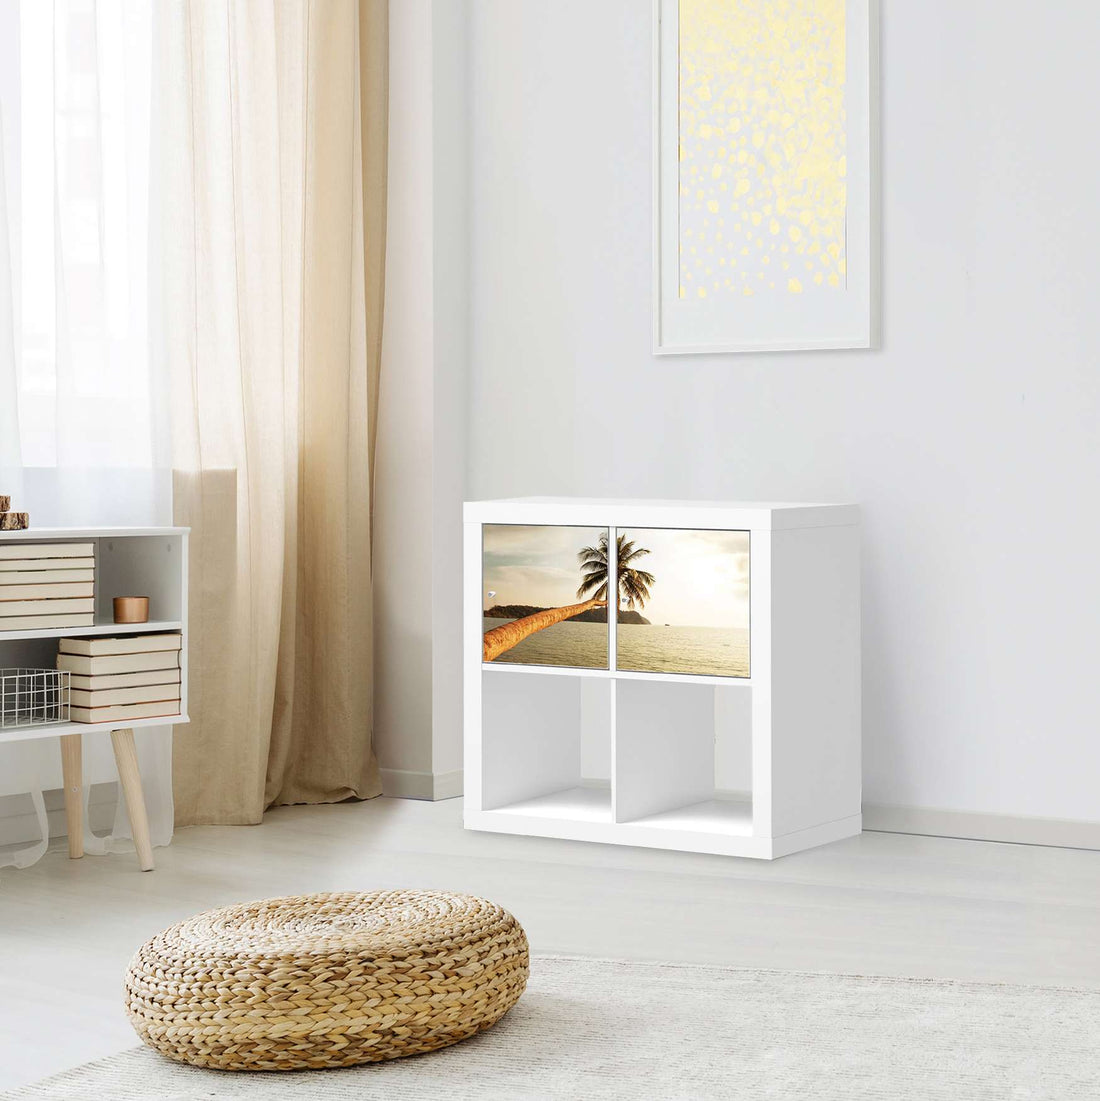 Möbel Klebefolie Paradise - IKEA Expedit Regal 2 Türen Quer - Wohnzimmer